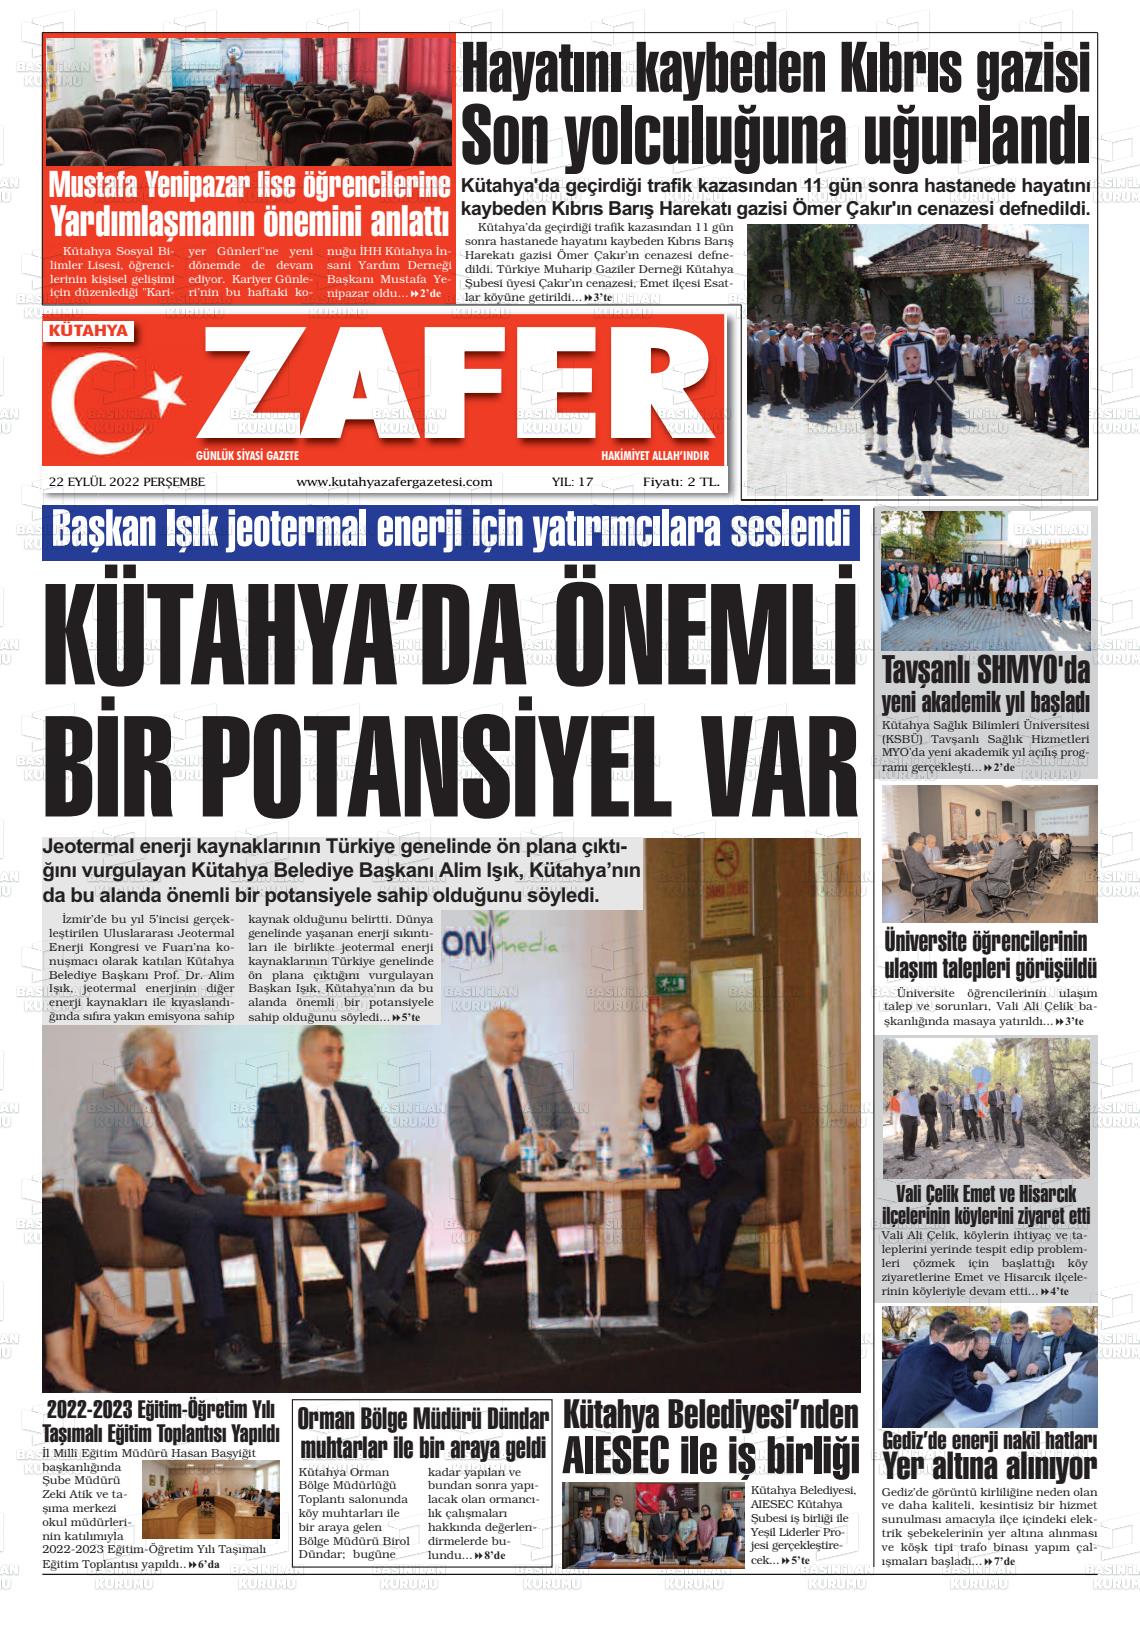 22 Eylül 2022 Kütahya Zafer Gazete Manşeti